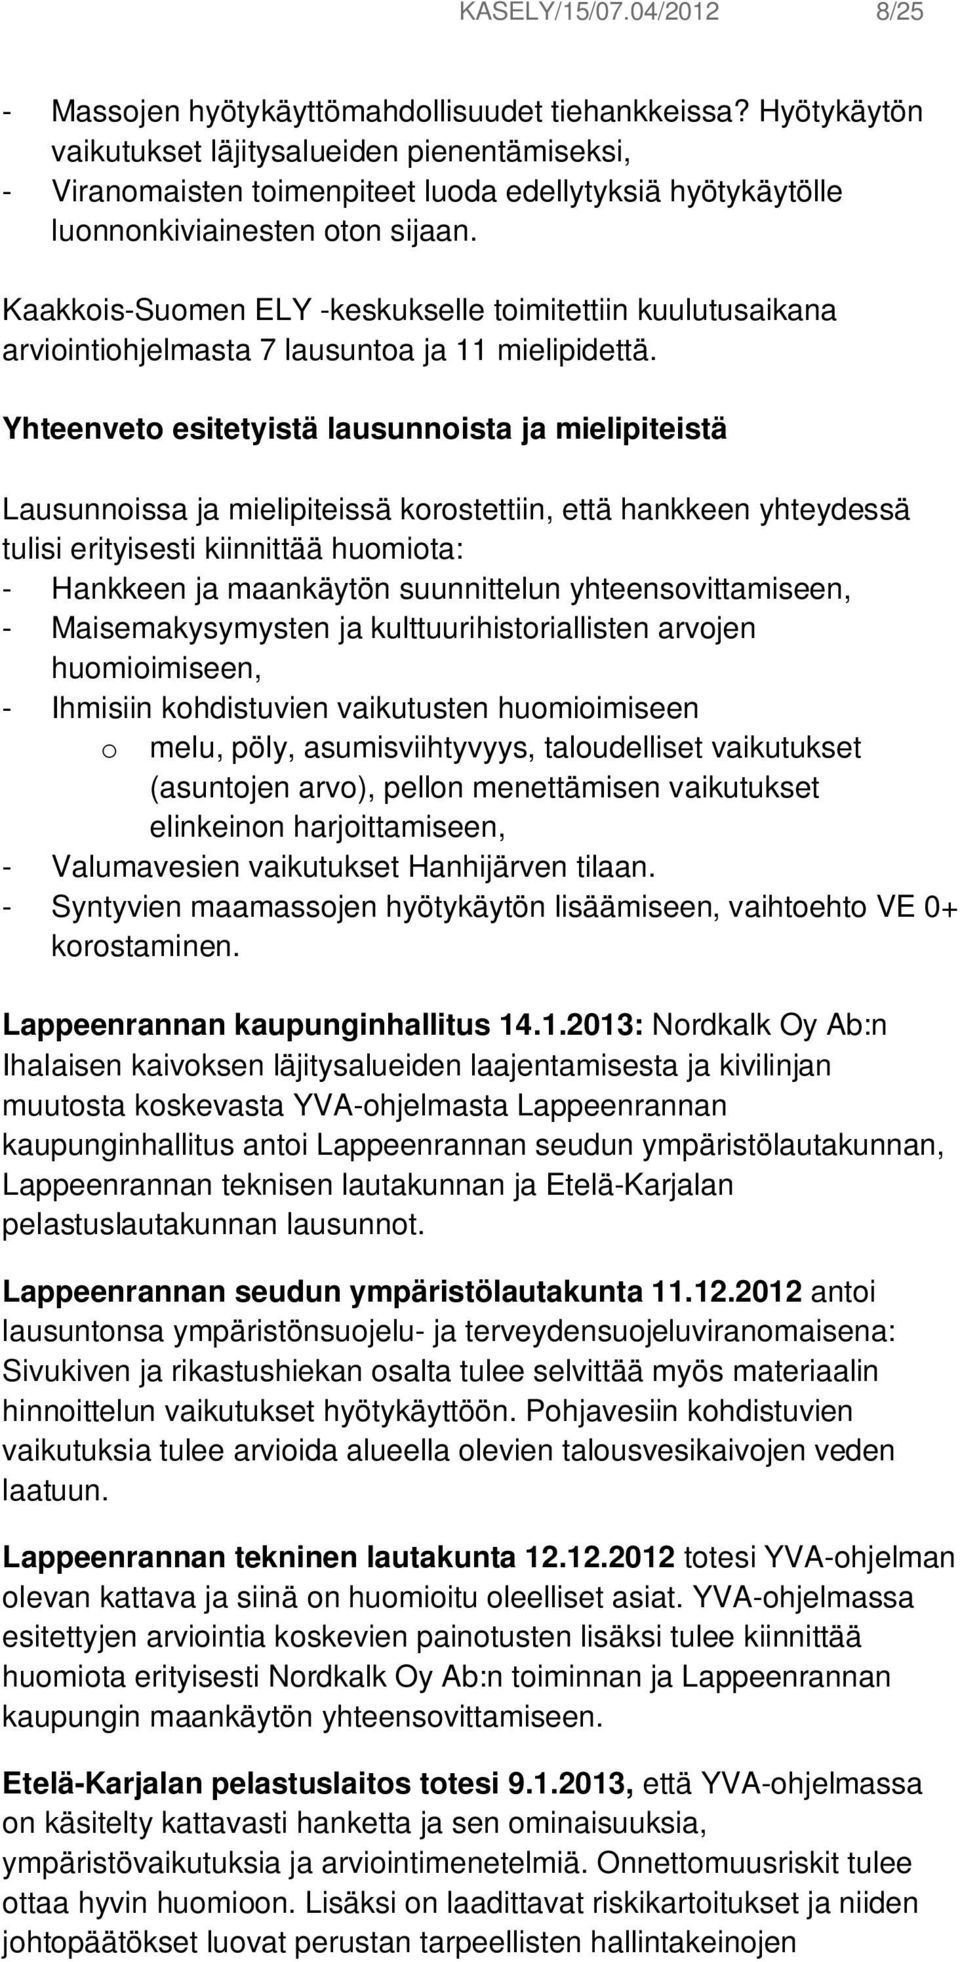 Kaakkois-Suomen ELY -keskukselle toimitettiin kuulutusaikana arviointiohjelmasta 7 lausuntoa ja 11 mielipidettä.